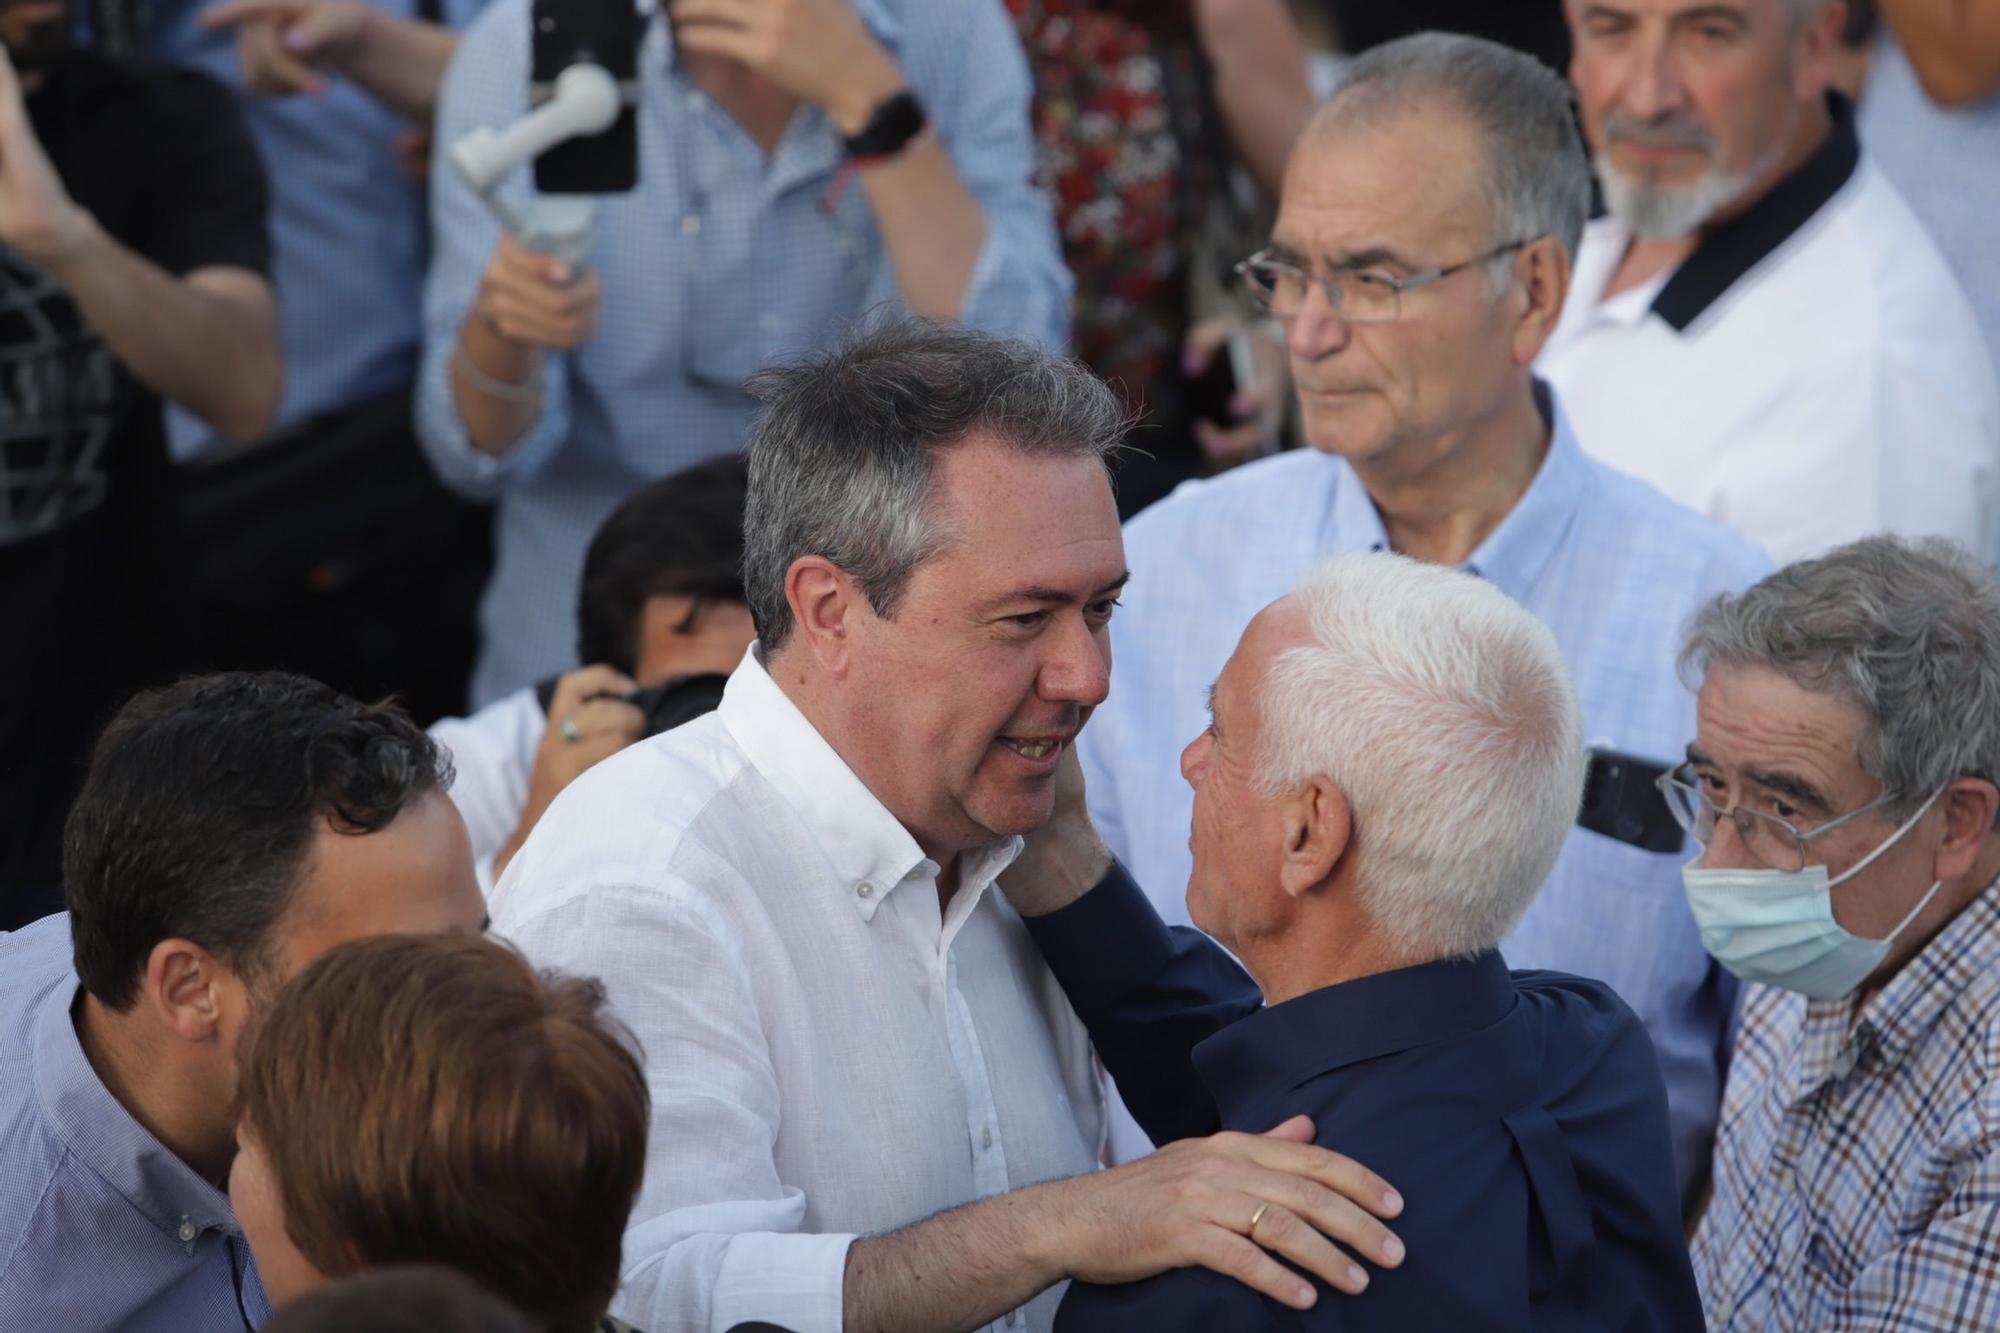 Acto de Juan Espadas, candidato del PSOE a las elecciones andaluzas, en Málaga